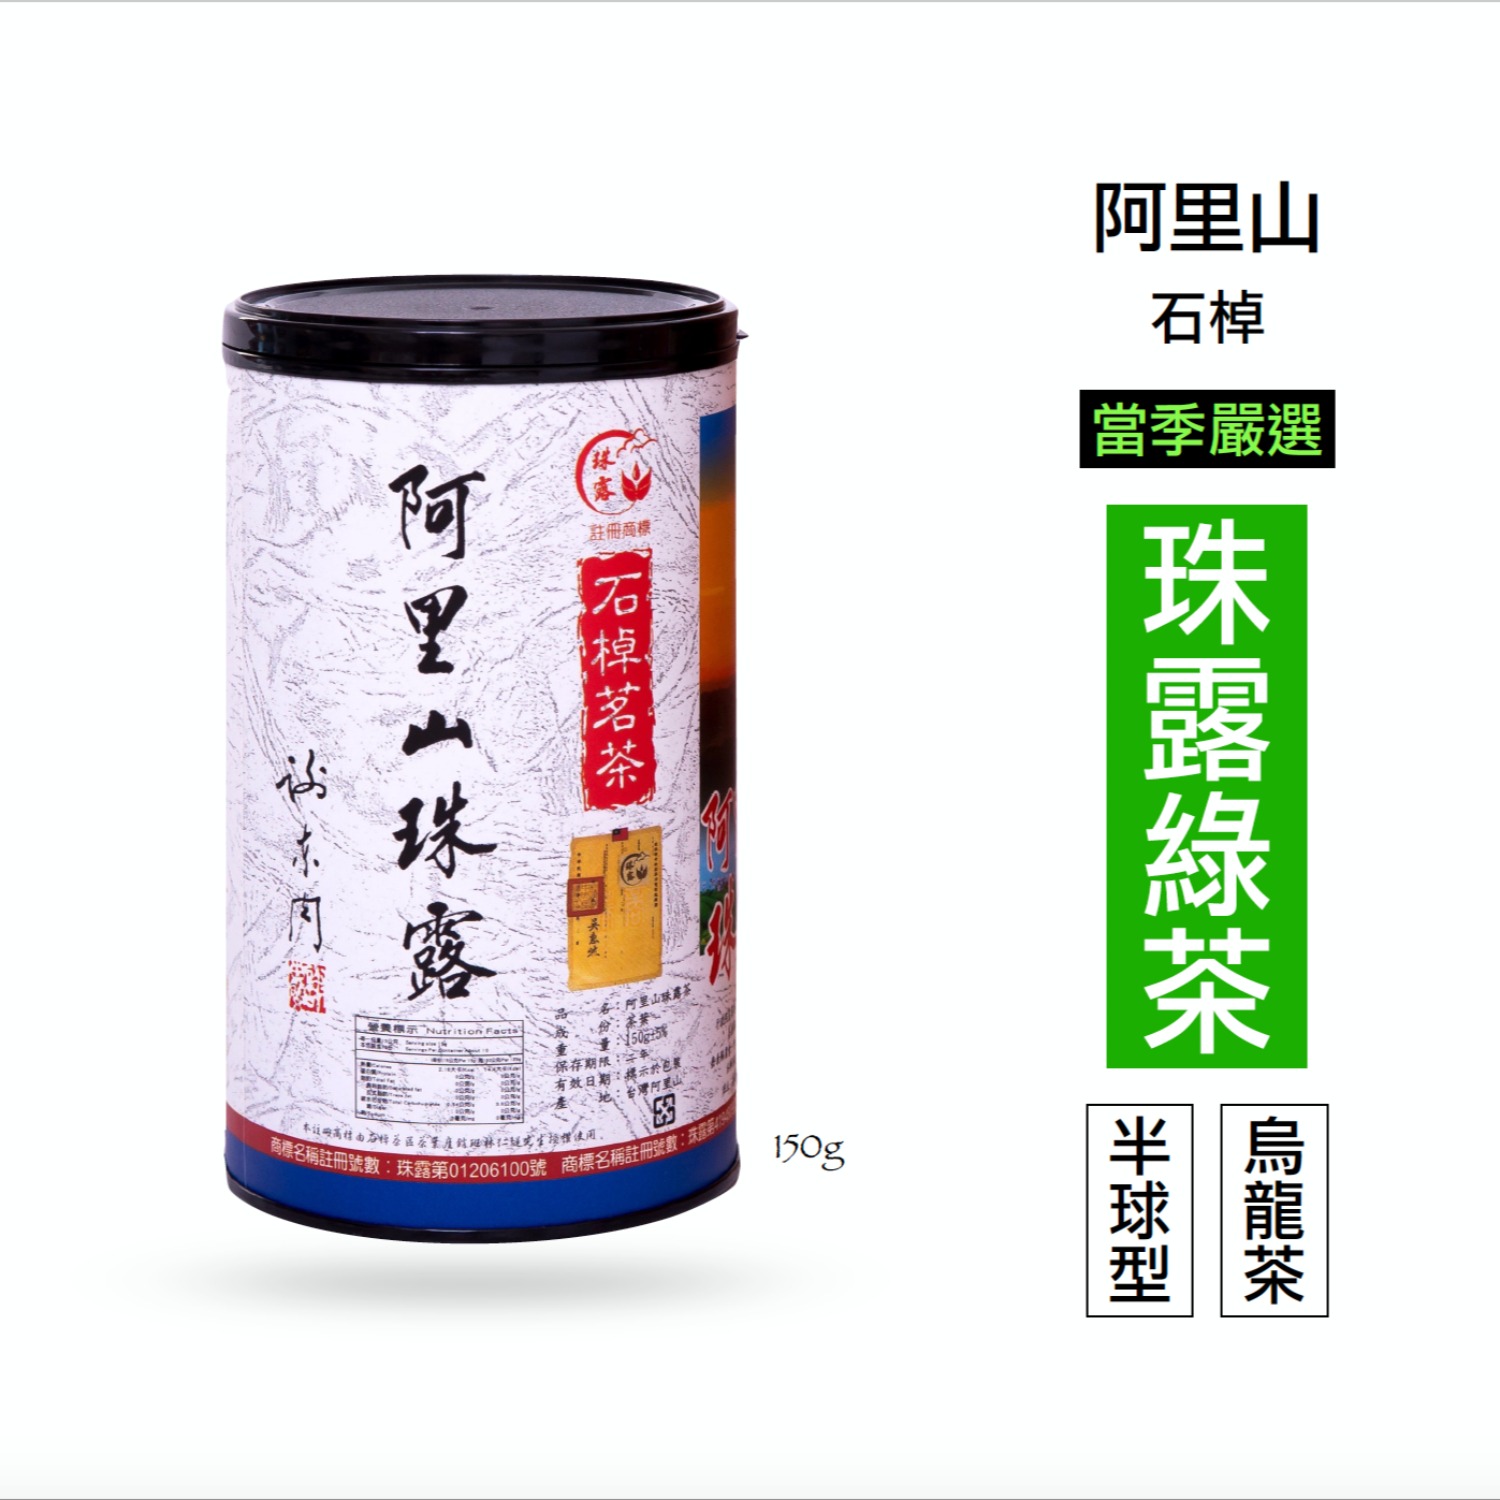 阿里山珠露茶 青心烏龍 半球型 高山茶綠茶 150g